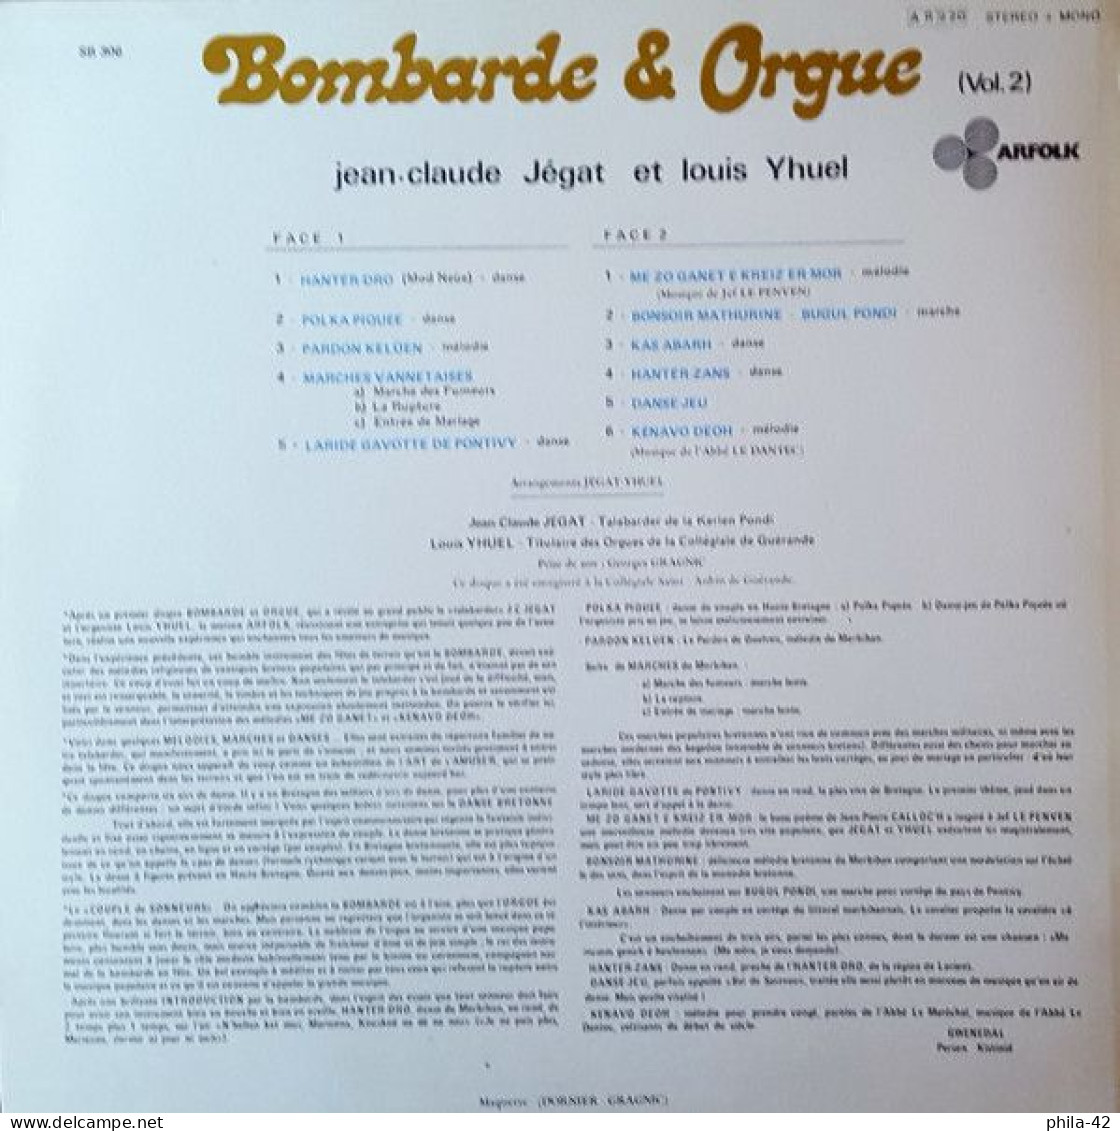 Bombarde Et Orgue 1973 -  Musiques De Bretagne - Disque Vinyle 33 Tours - ARFOLK SB 306 - Musiques Du Monde